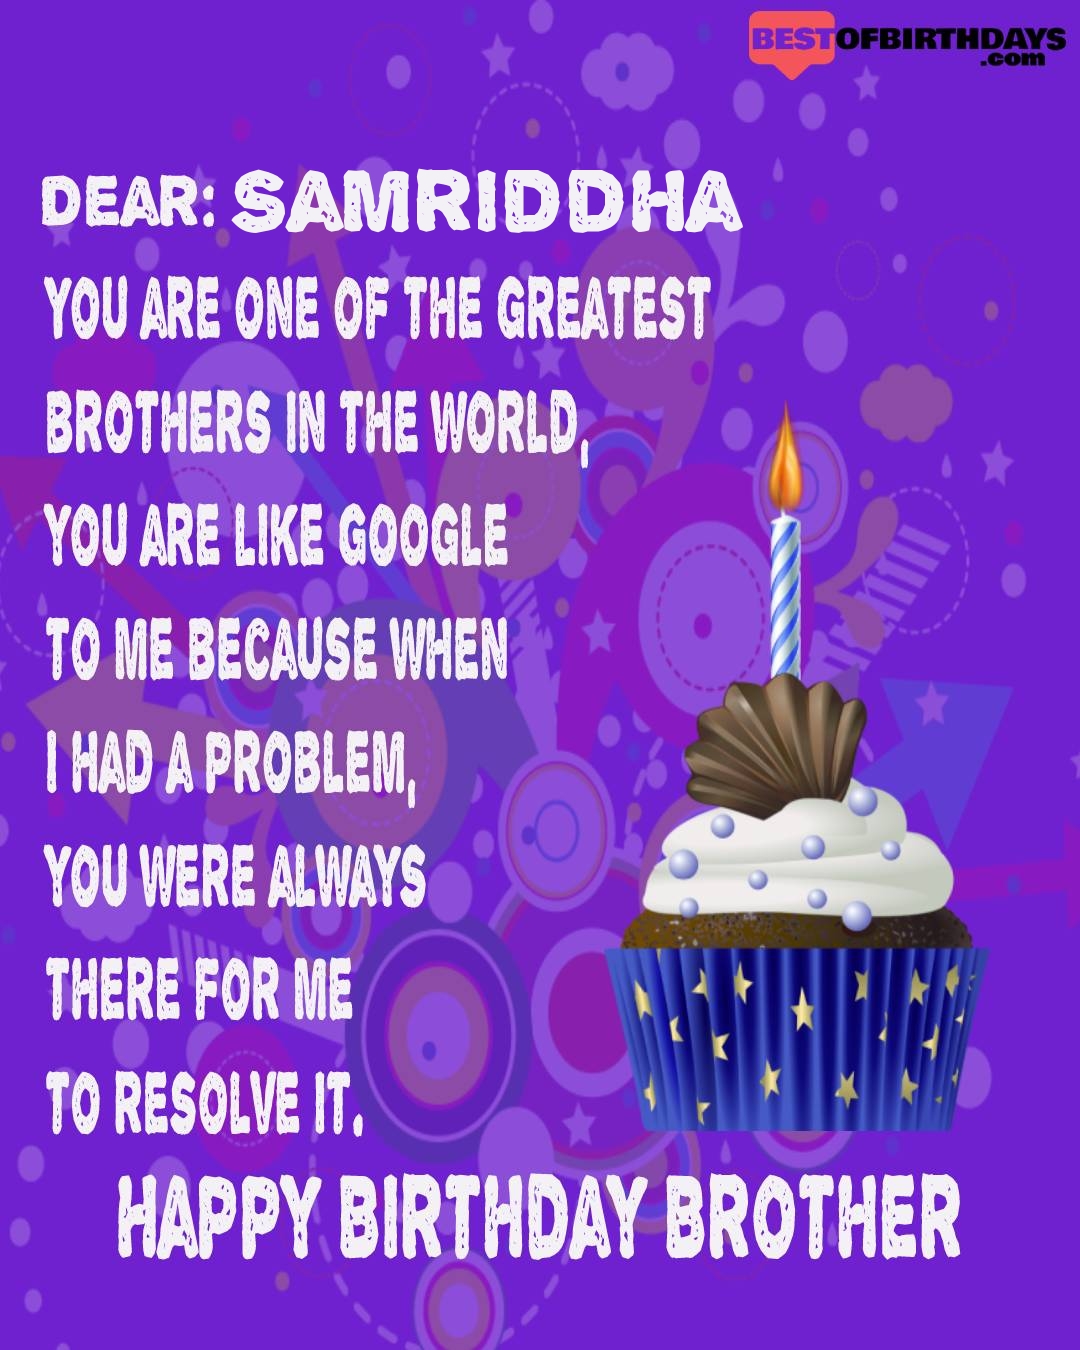 Happy birthday samriddha bhai brother bro